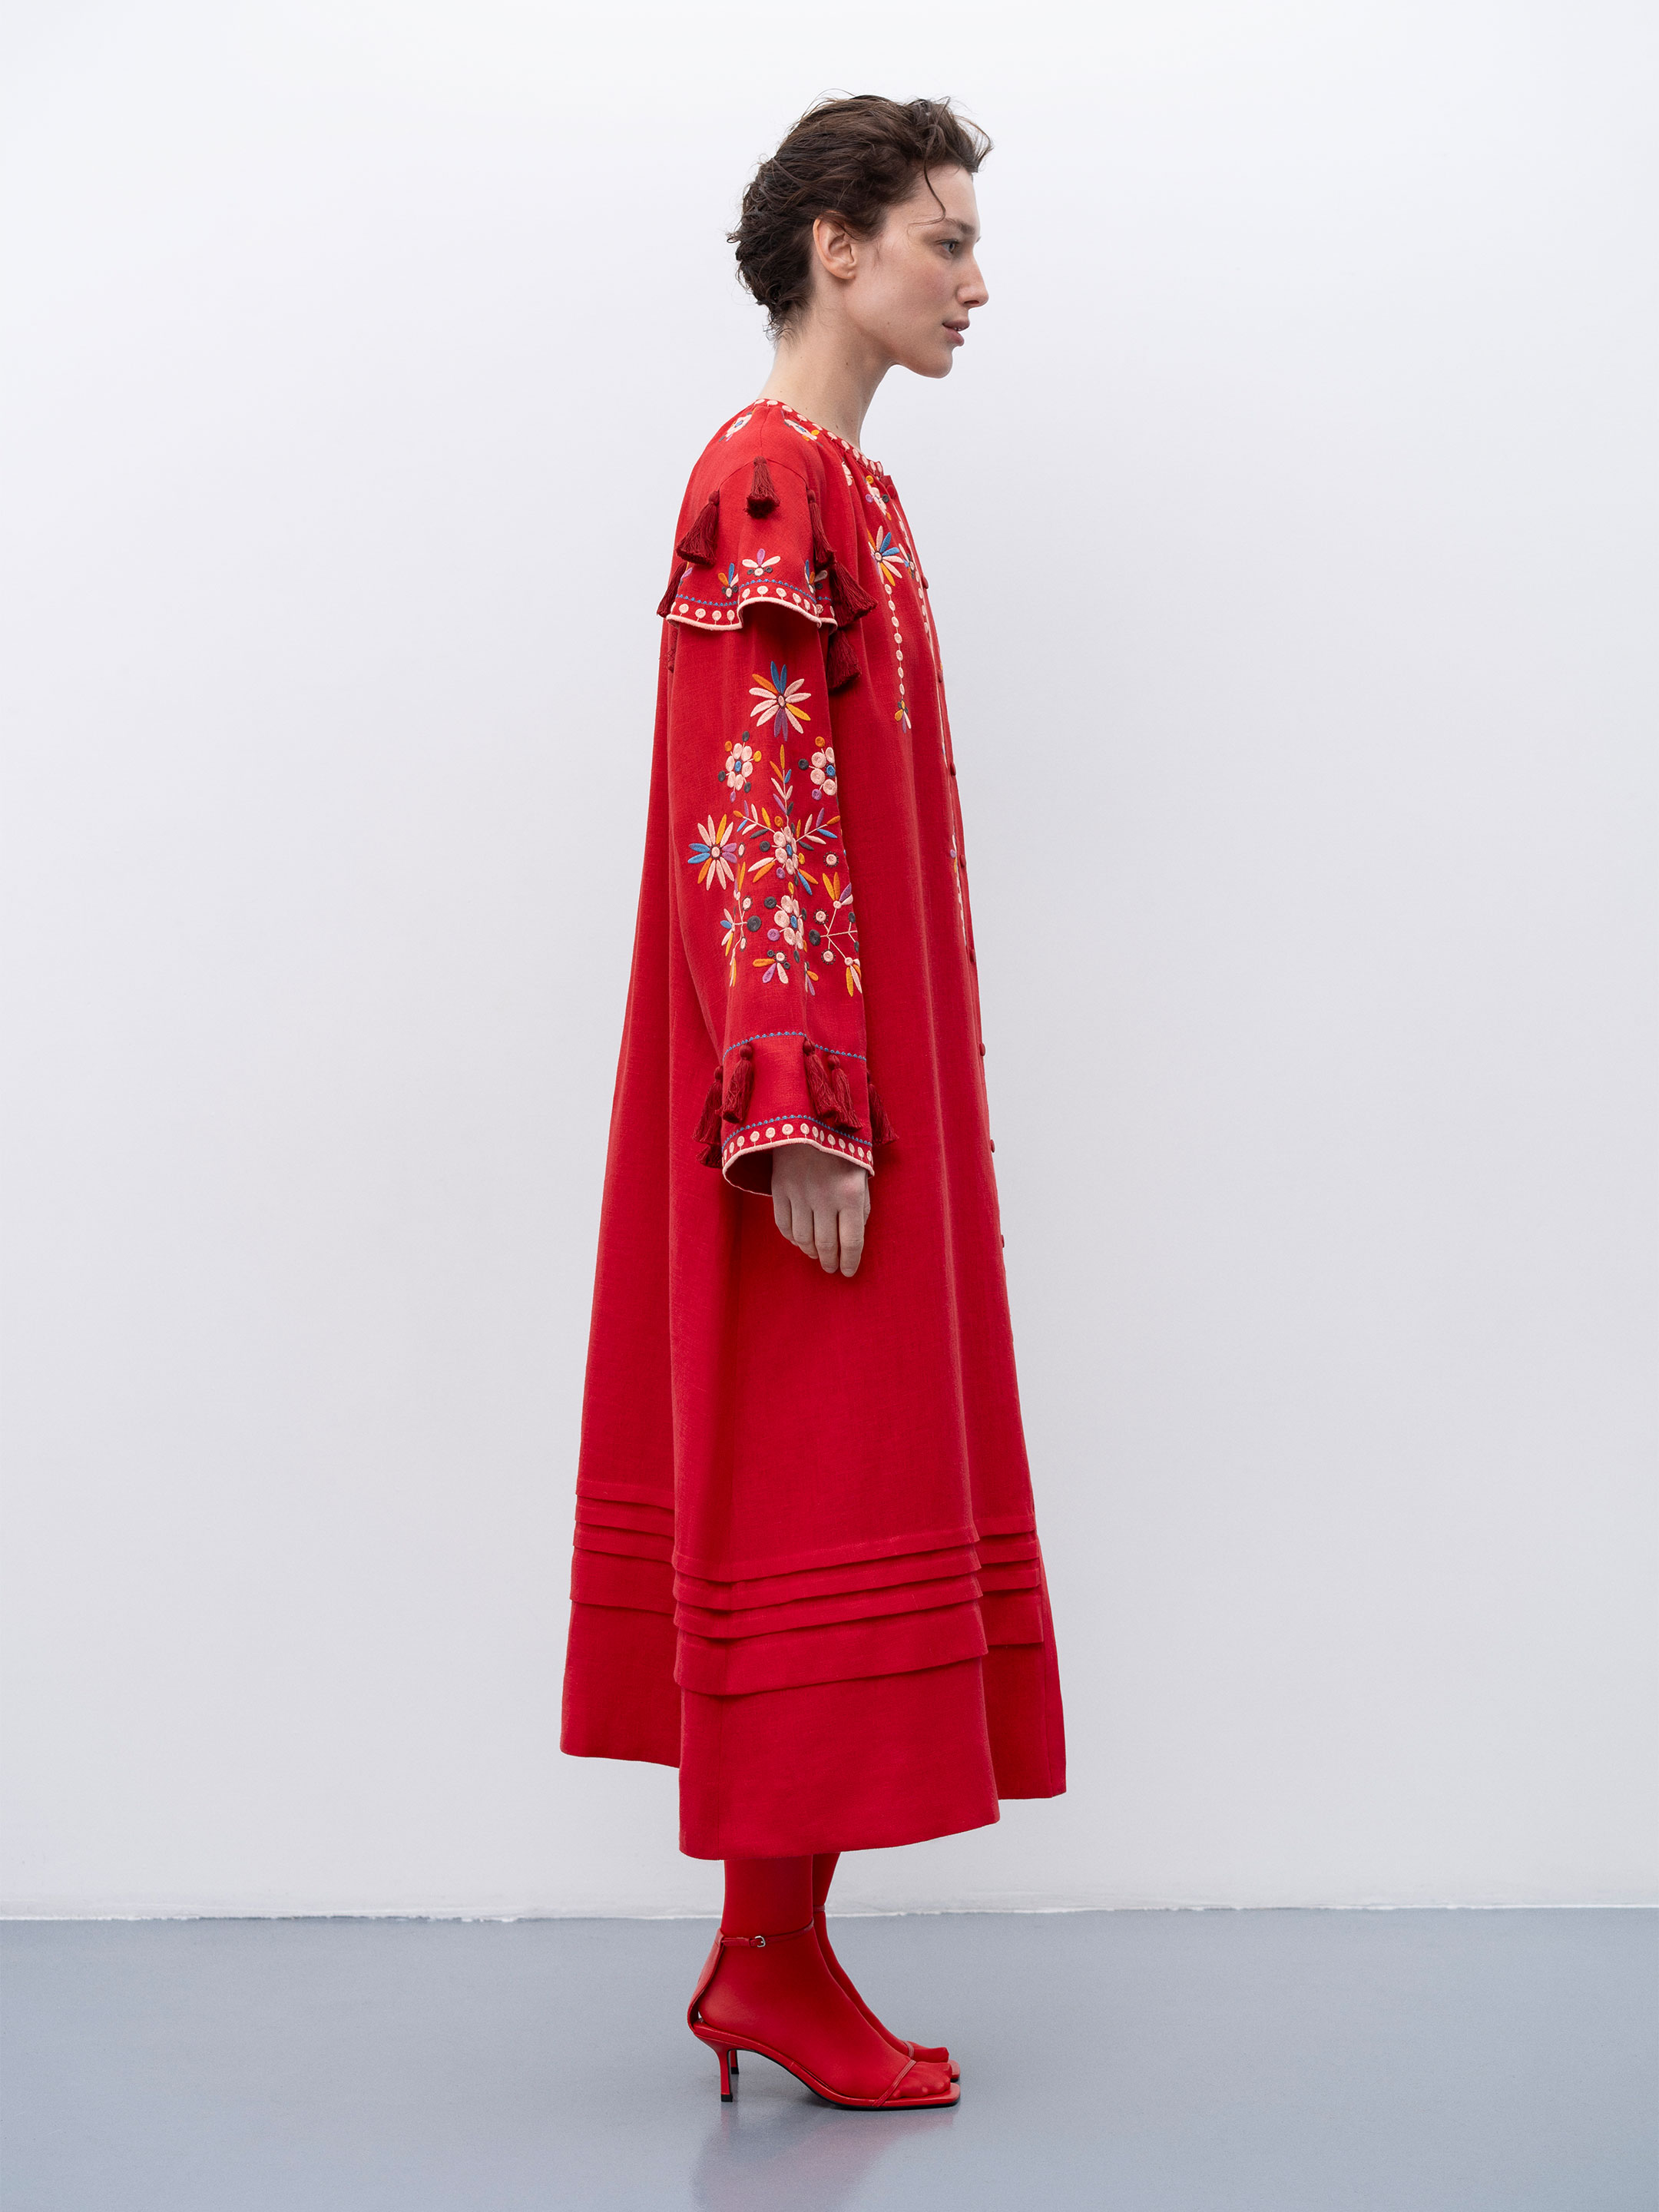 Червона лляна вишита сукня з квітковими мотивами та китицями "Веснянка" - фото 2